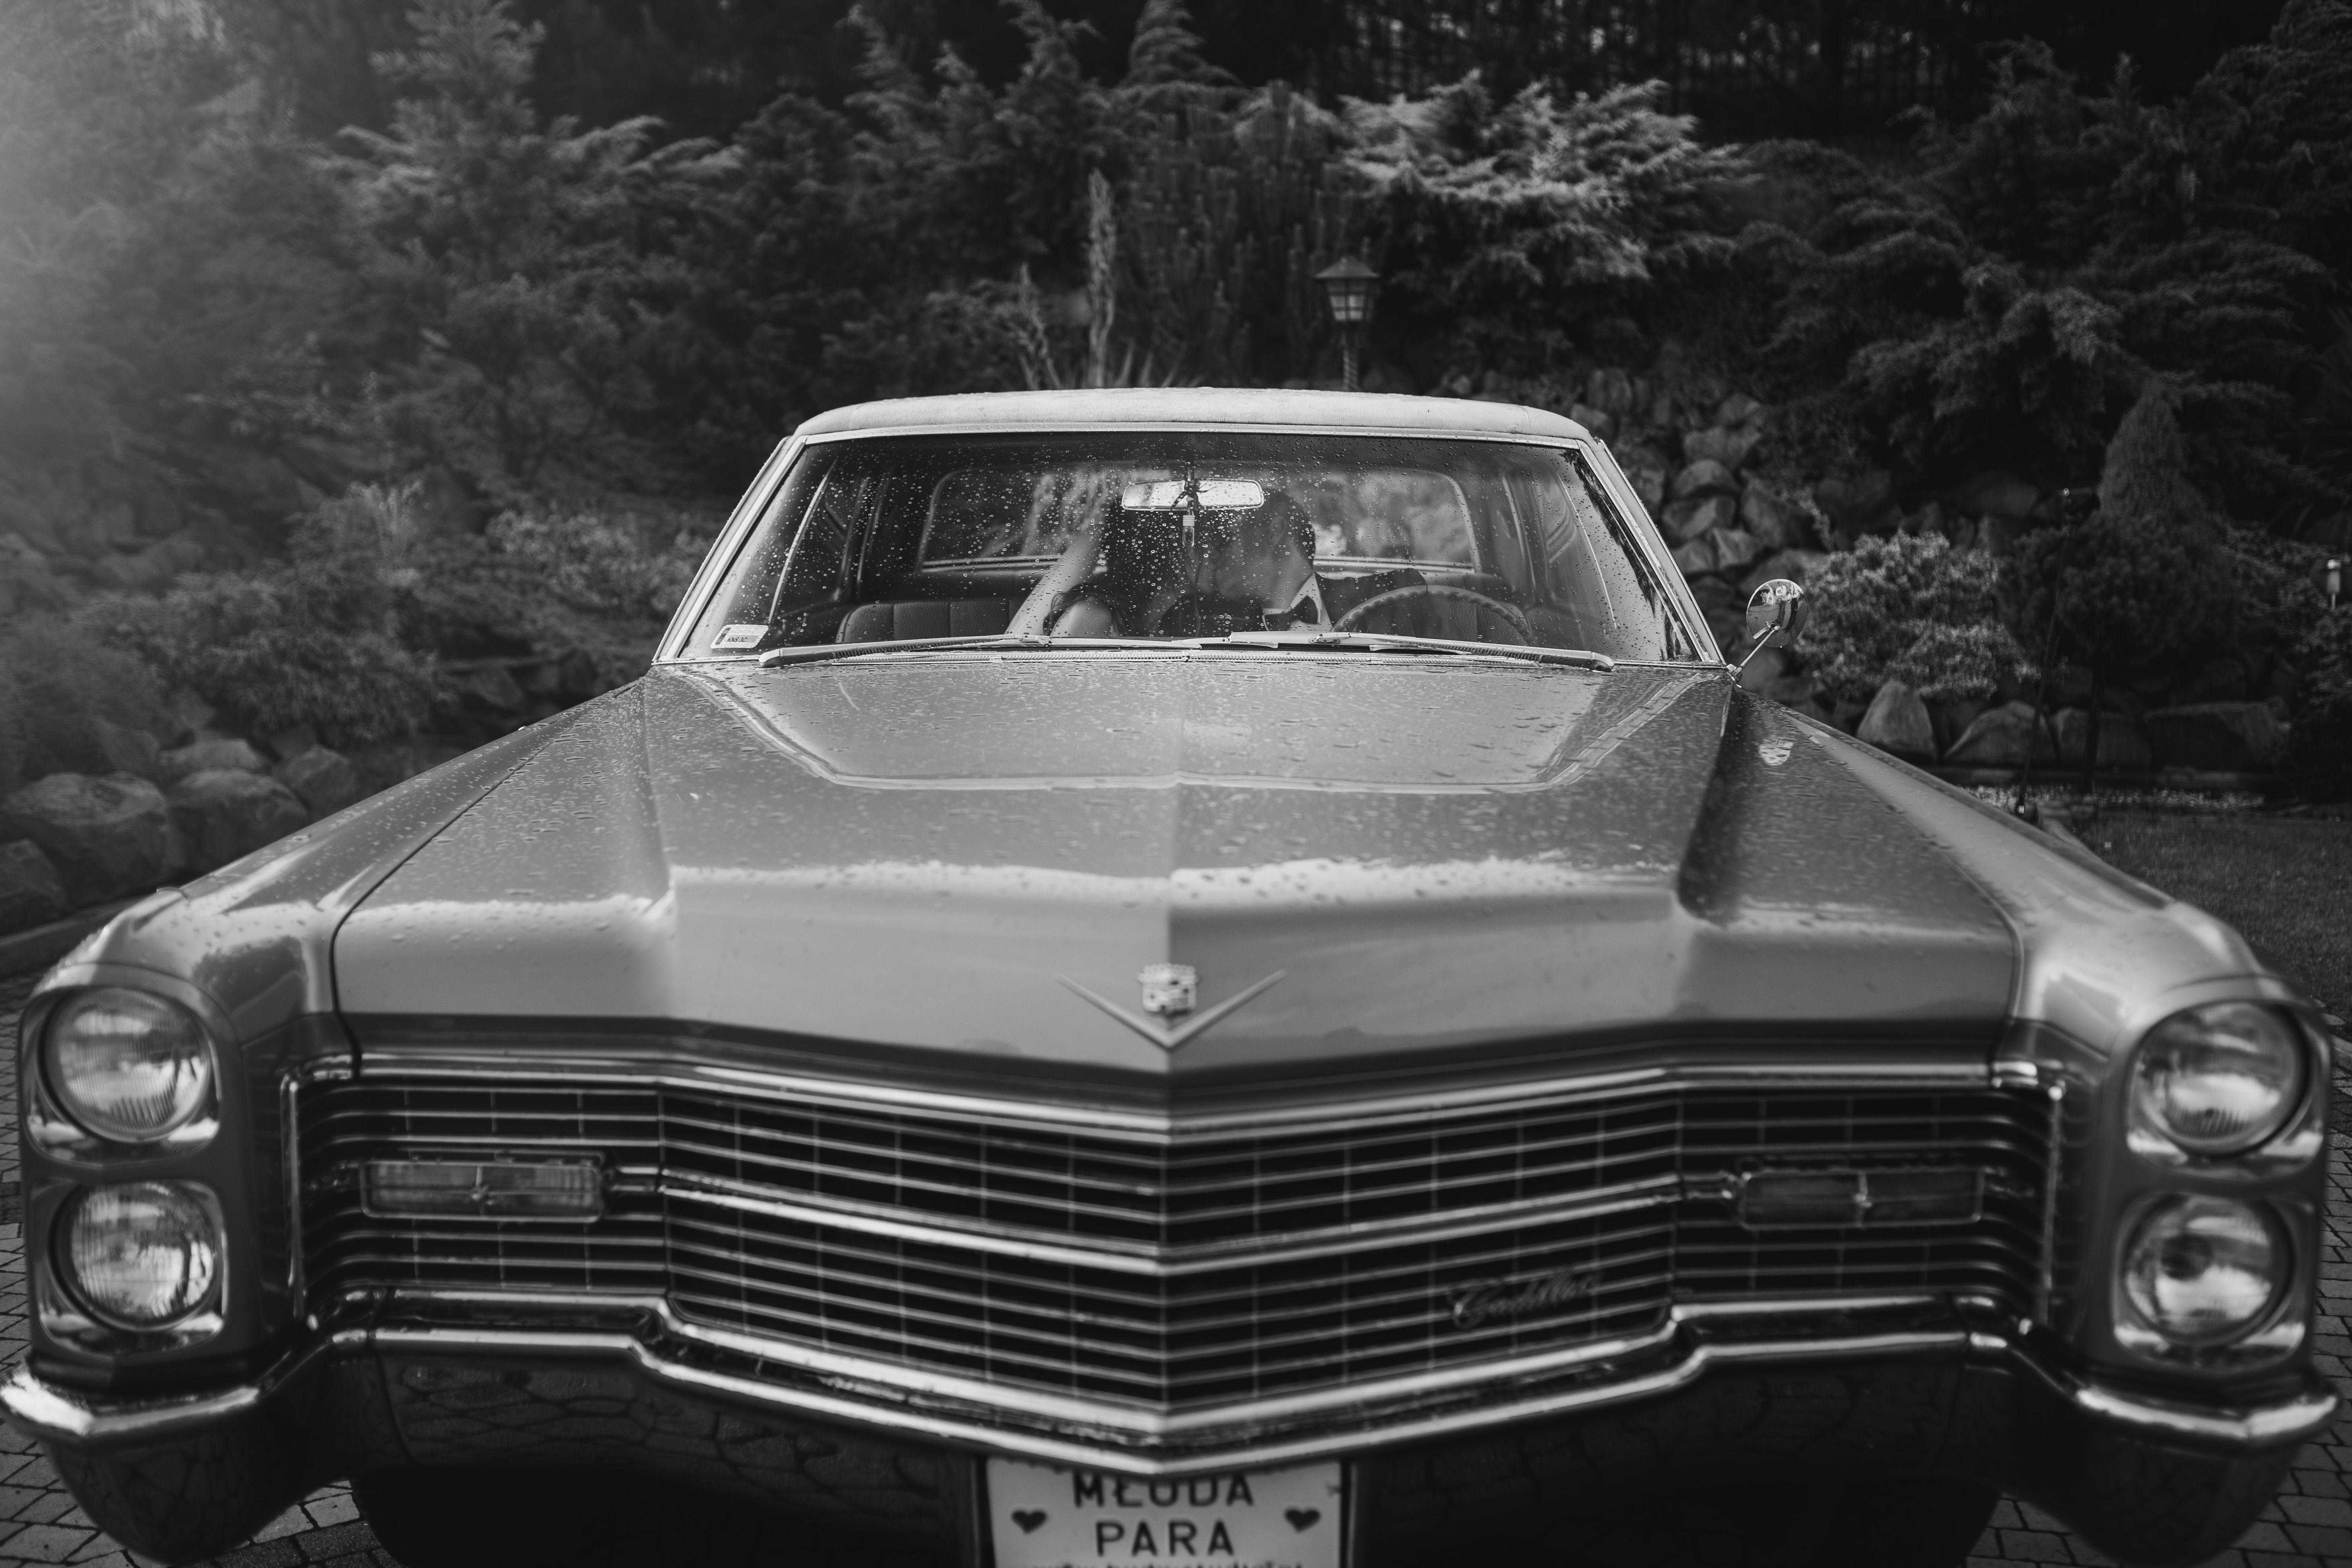 Samochód Auto do ślubu Cadillac 1966 - klimatyzacja retro wesele